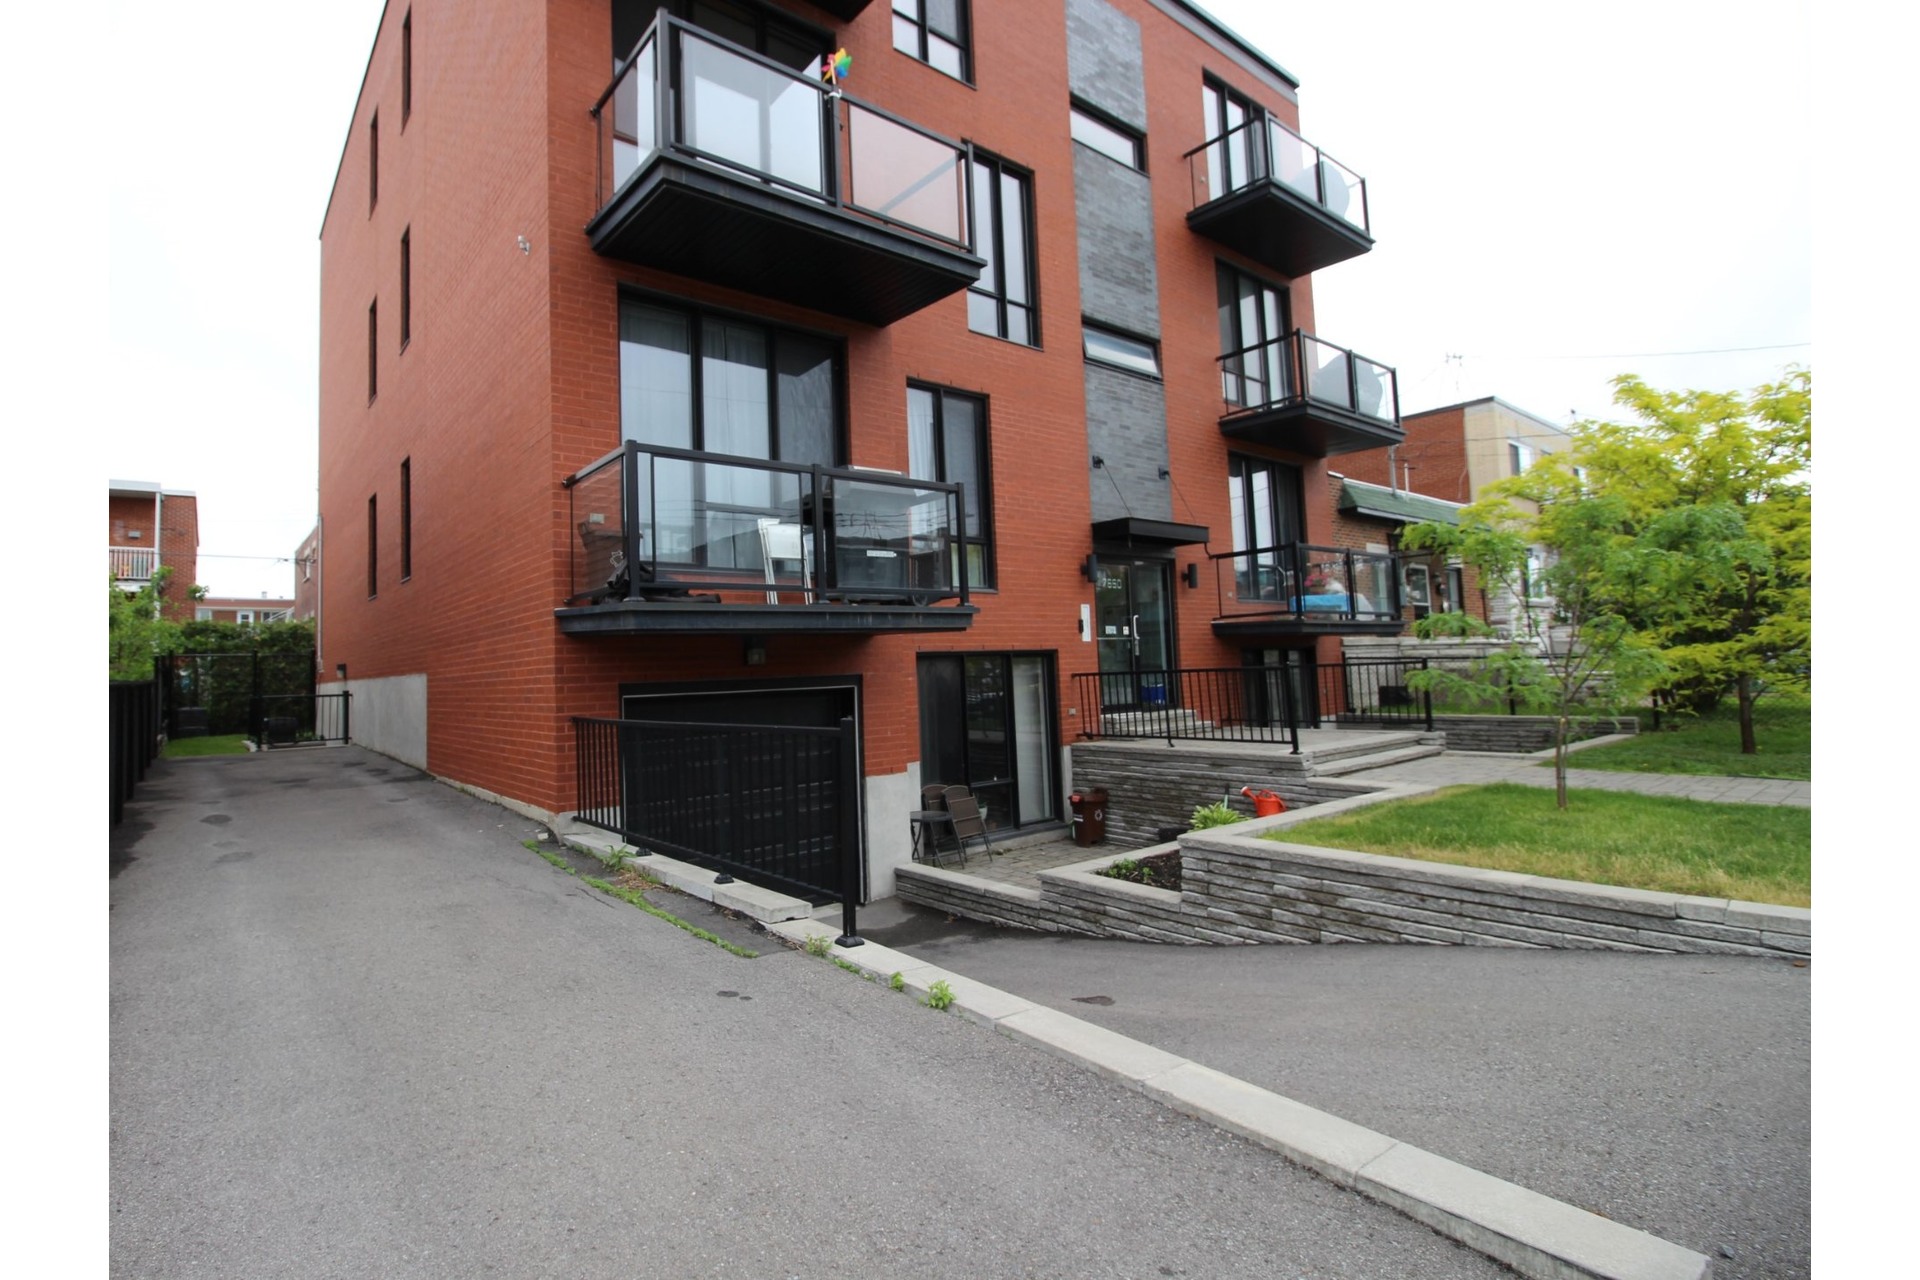 image 18 - Apartment For sale Villeray/Saint-Michel/Parc-Extension Montréal  - 6 rooms